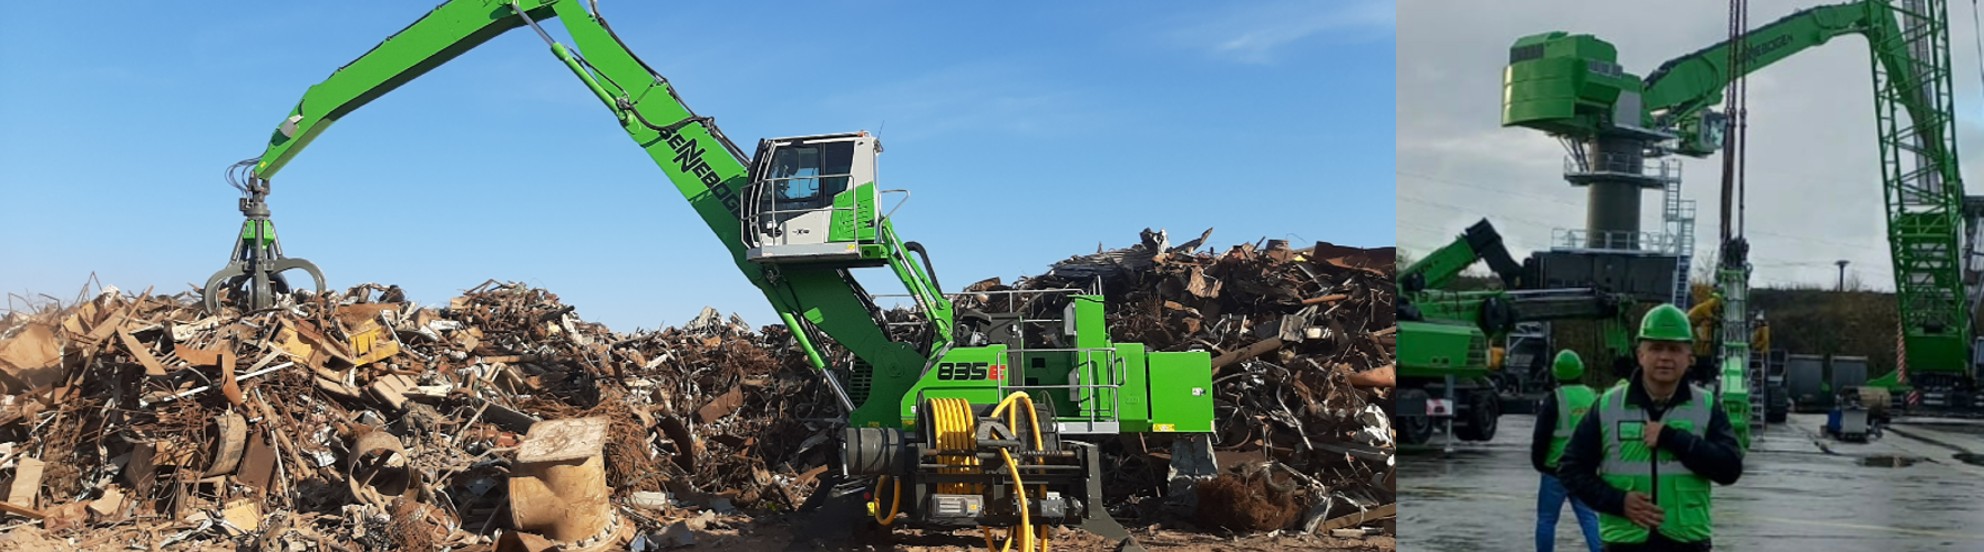 Con la importación de la prestigiosa marca de maquinaria alemana Sennebogen, Salfa trae a Chile la última tecnología en electromovilidad en maquinarias para las industrias forestal y de reciclaje, entre otras.